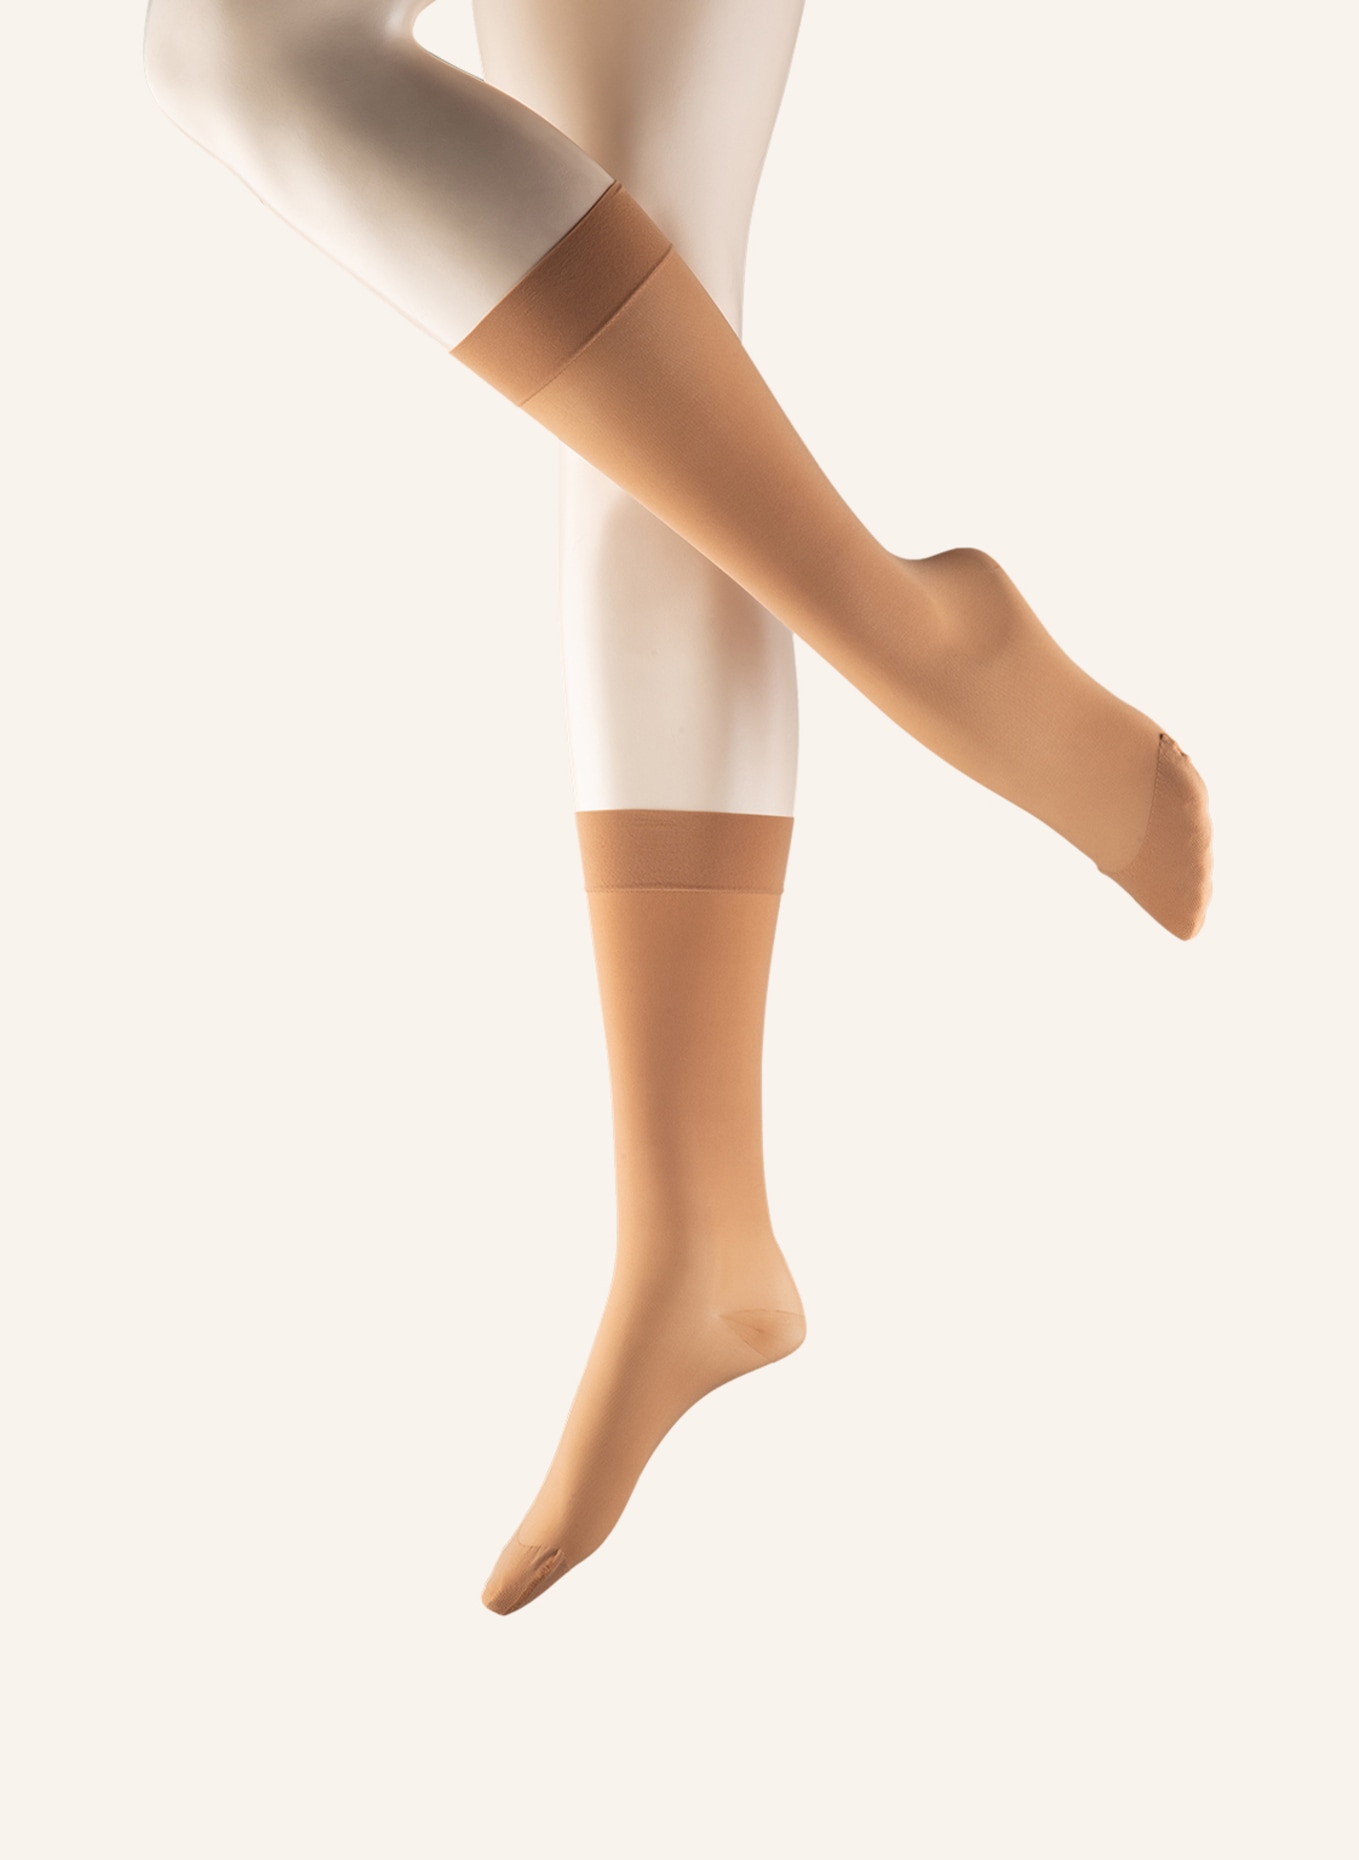 ITEM m6 Fine knee-high socks TRANSLUCENT, Color: 740 light beige (Image 1)